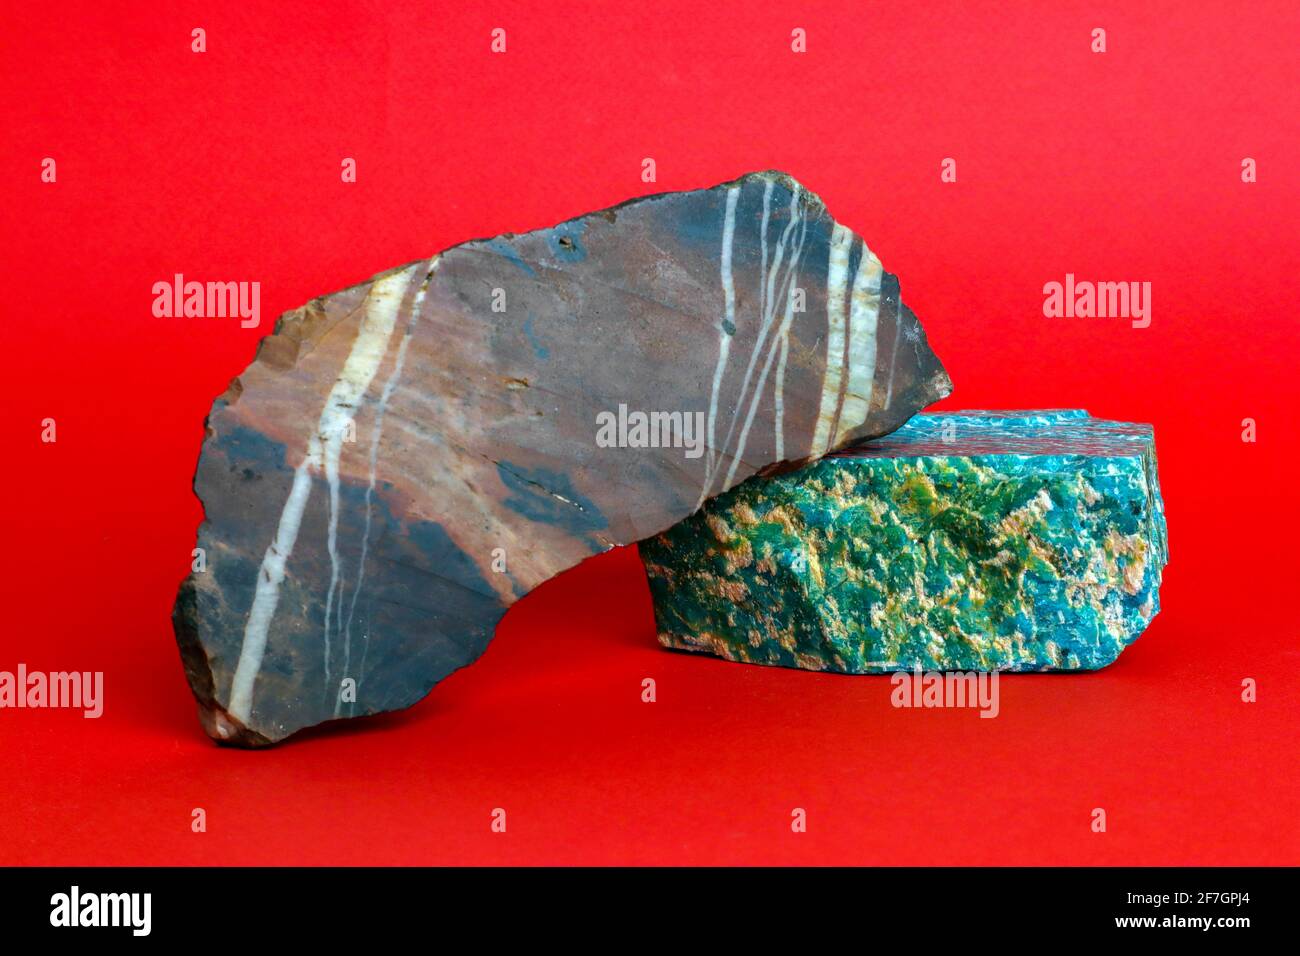 Deux morceaux de minéraux naturels crus, l'amazonite et le jasper, sur fond rouge vif Banque D'Images